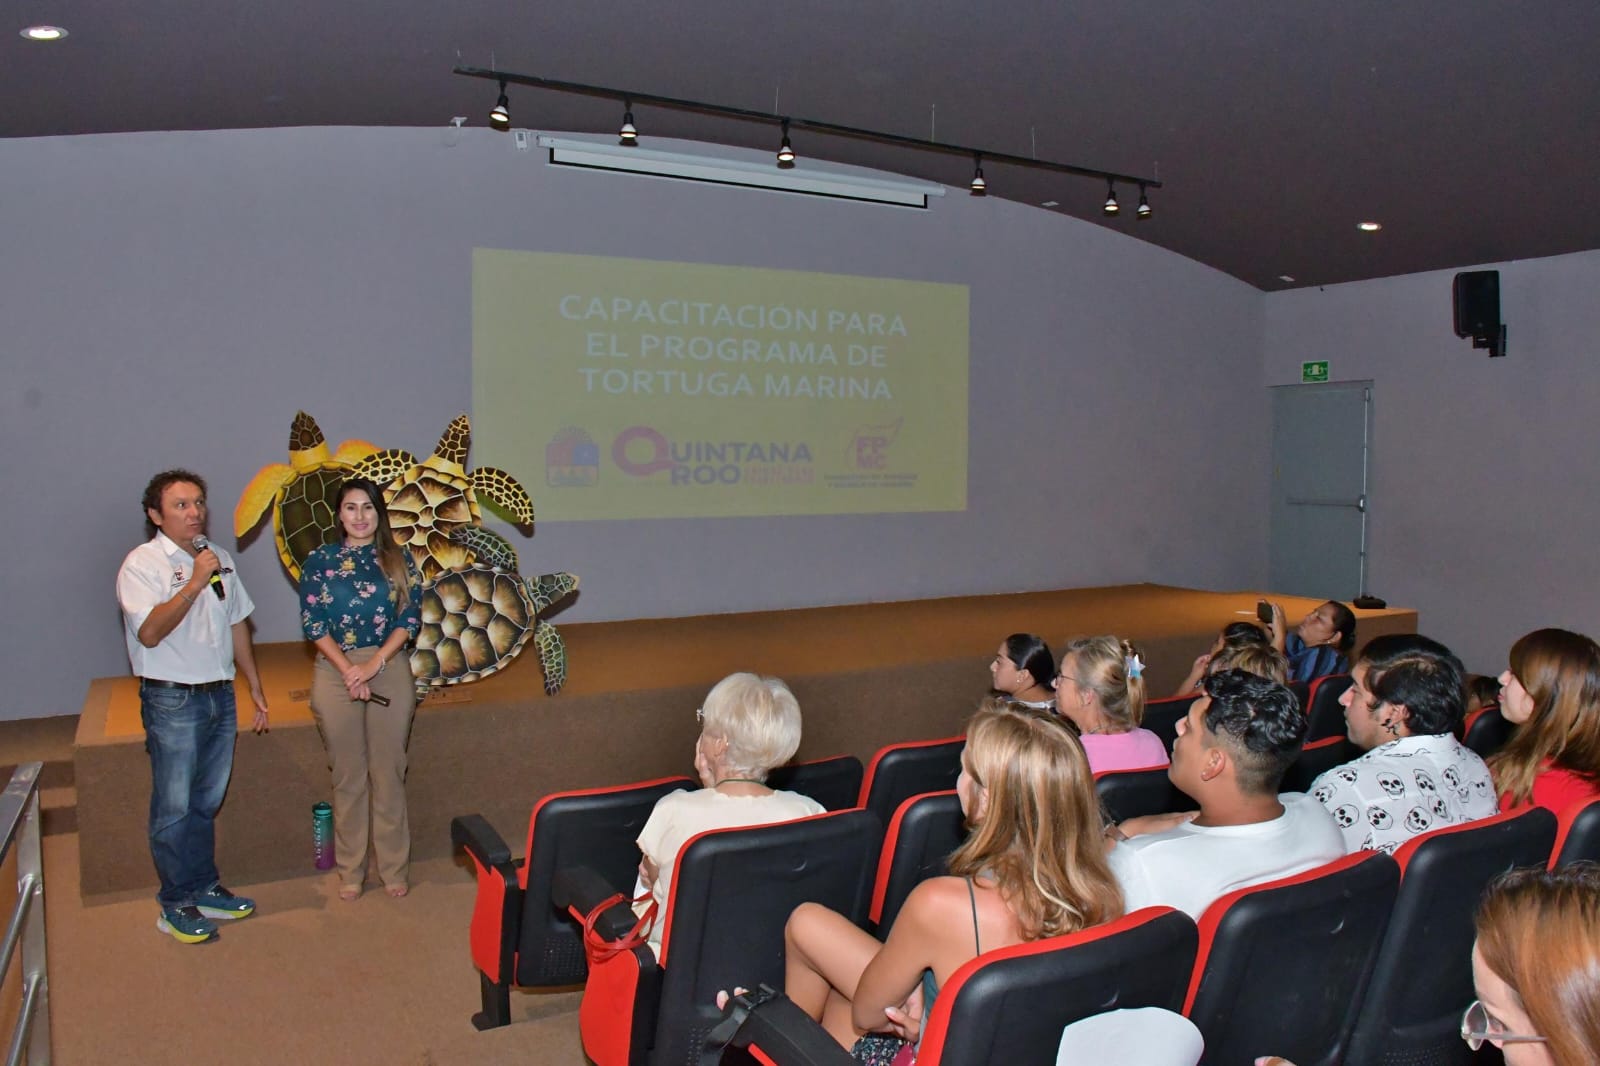 Voluntariado de la Fundación de Parques y Museos de Cozumel se suma a la protección de la tortuga marina